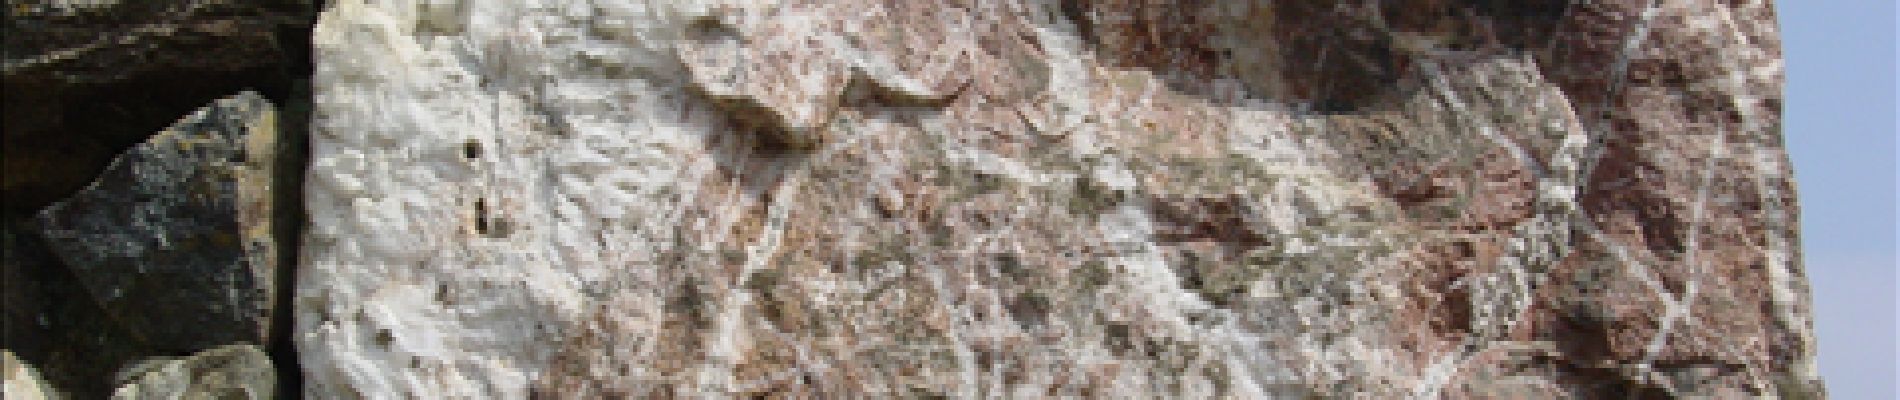 Point d'intérêt Plougonver - Le quartz de Toul an Hat - Photo